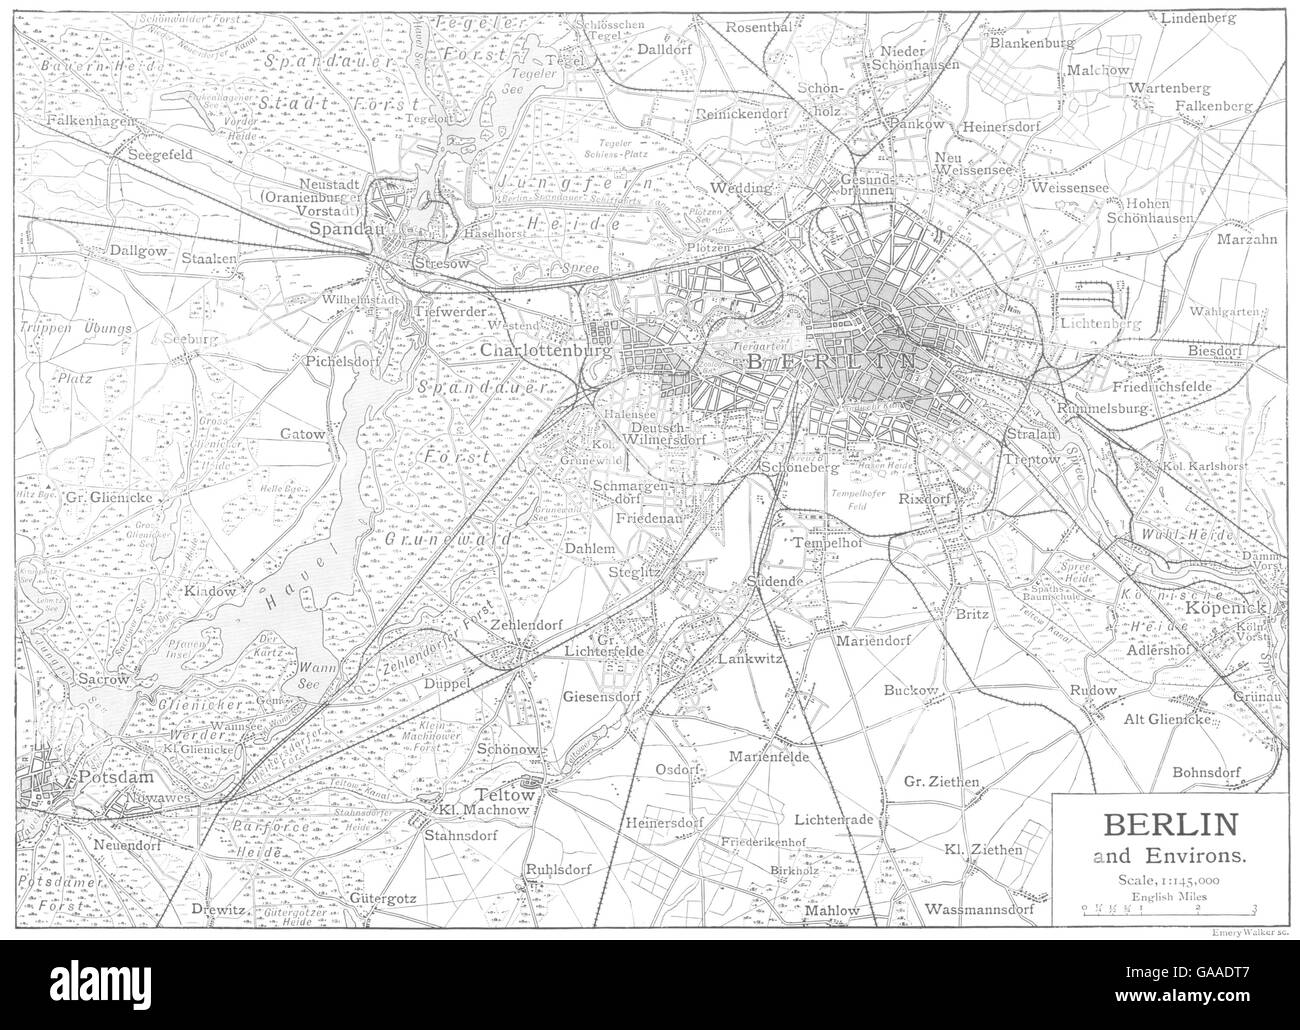 Alemania: Berlín y alrededores, 1910 mapa antiguo Foto de stock